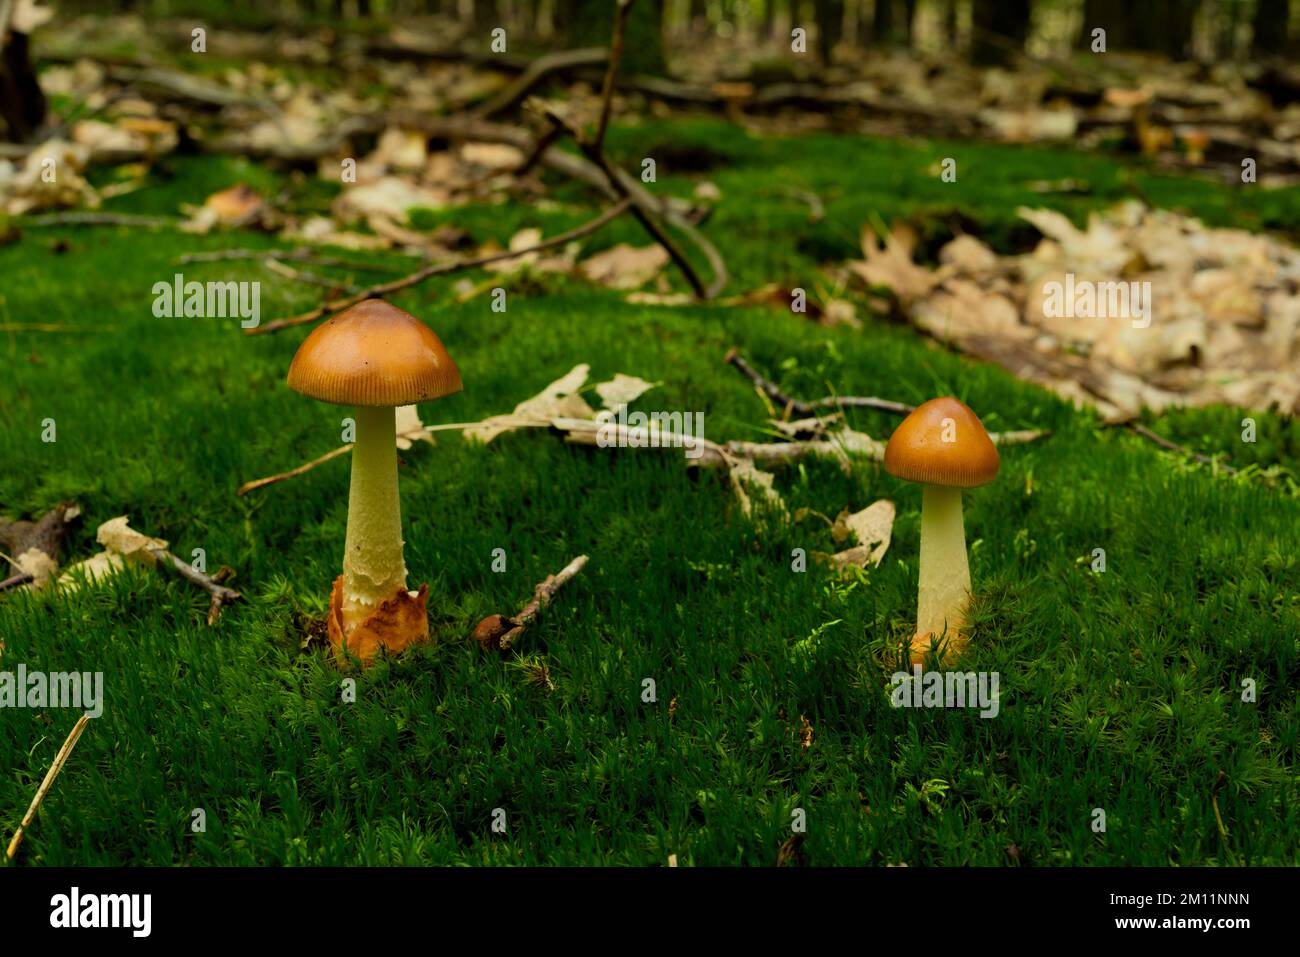 Fungo velenoso, piccolo fungo velenoso marrone nella foresta, cresciuto su muschio Foto Stock